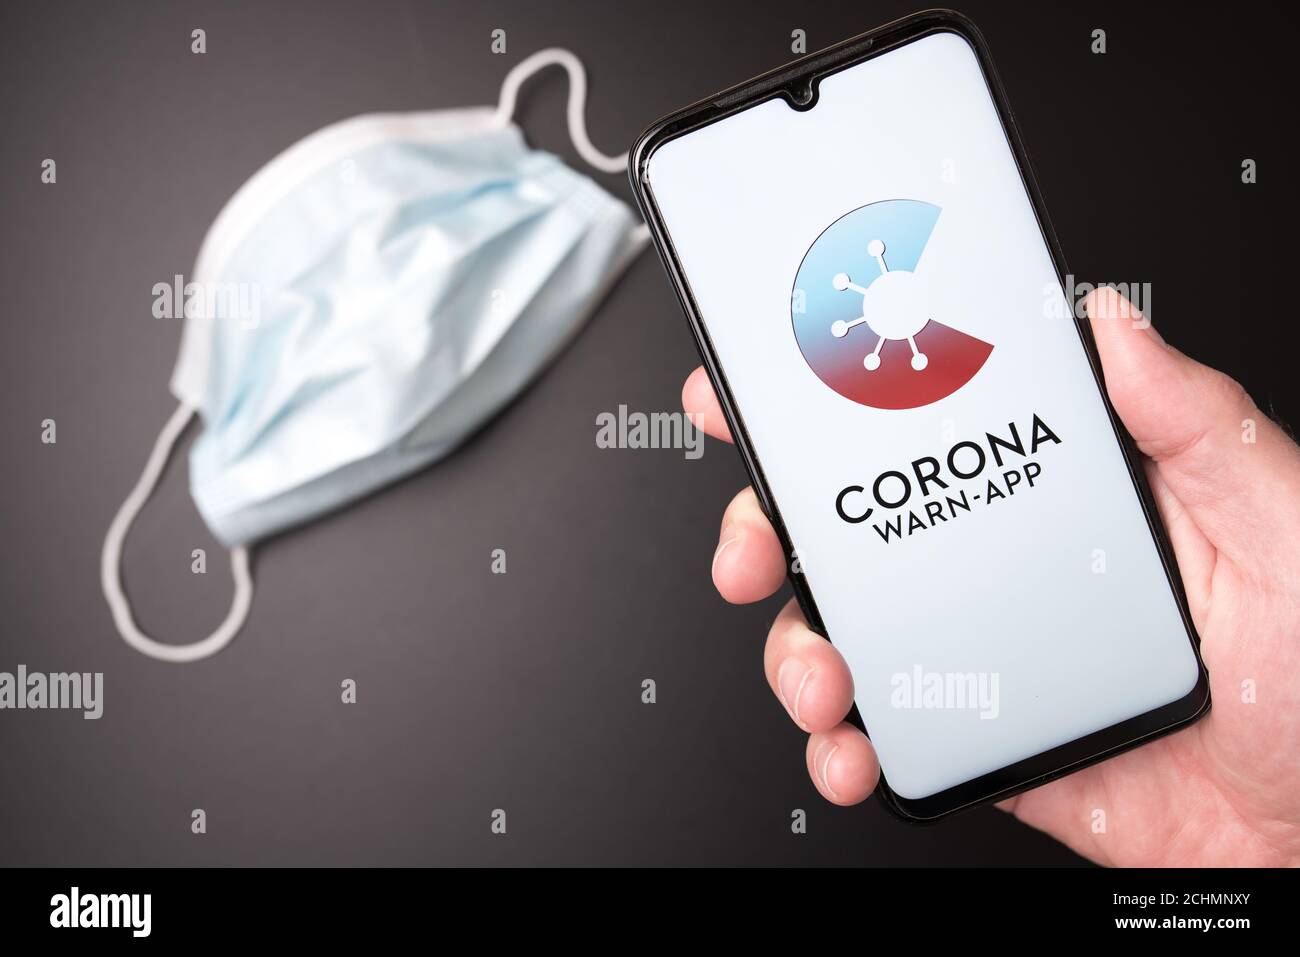 2020-09-14 Amburgo, Germania: Smartphone a mano con applicazione COVID-19 tedesca per il tracciamento dei contatti su sfondo scuro con maschera facciale monouso Foto Stock